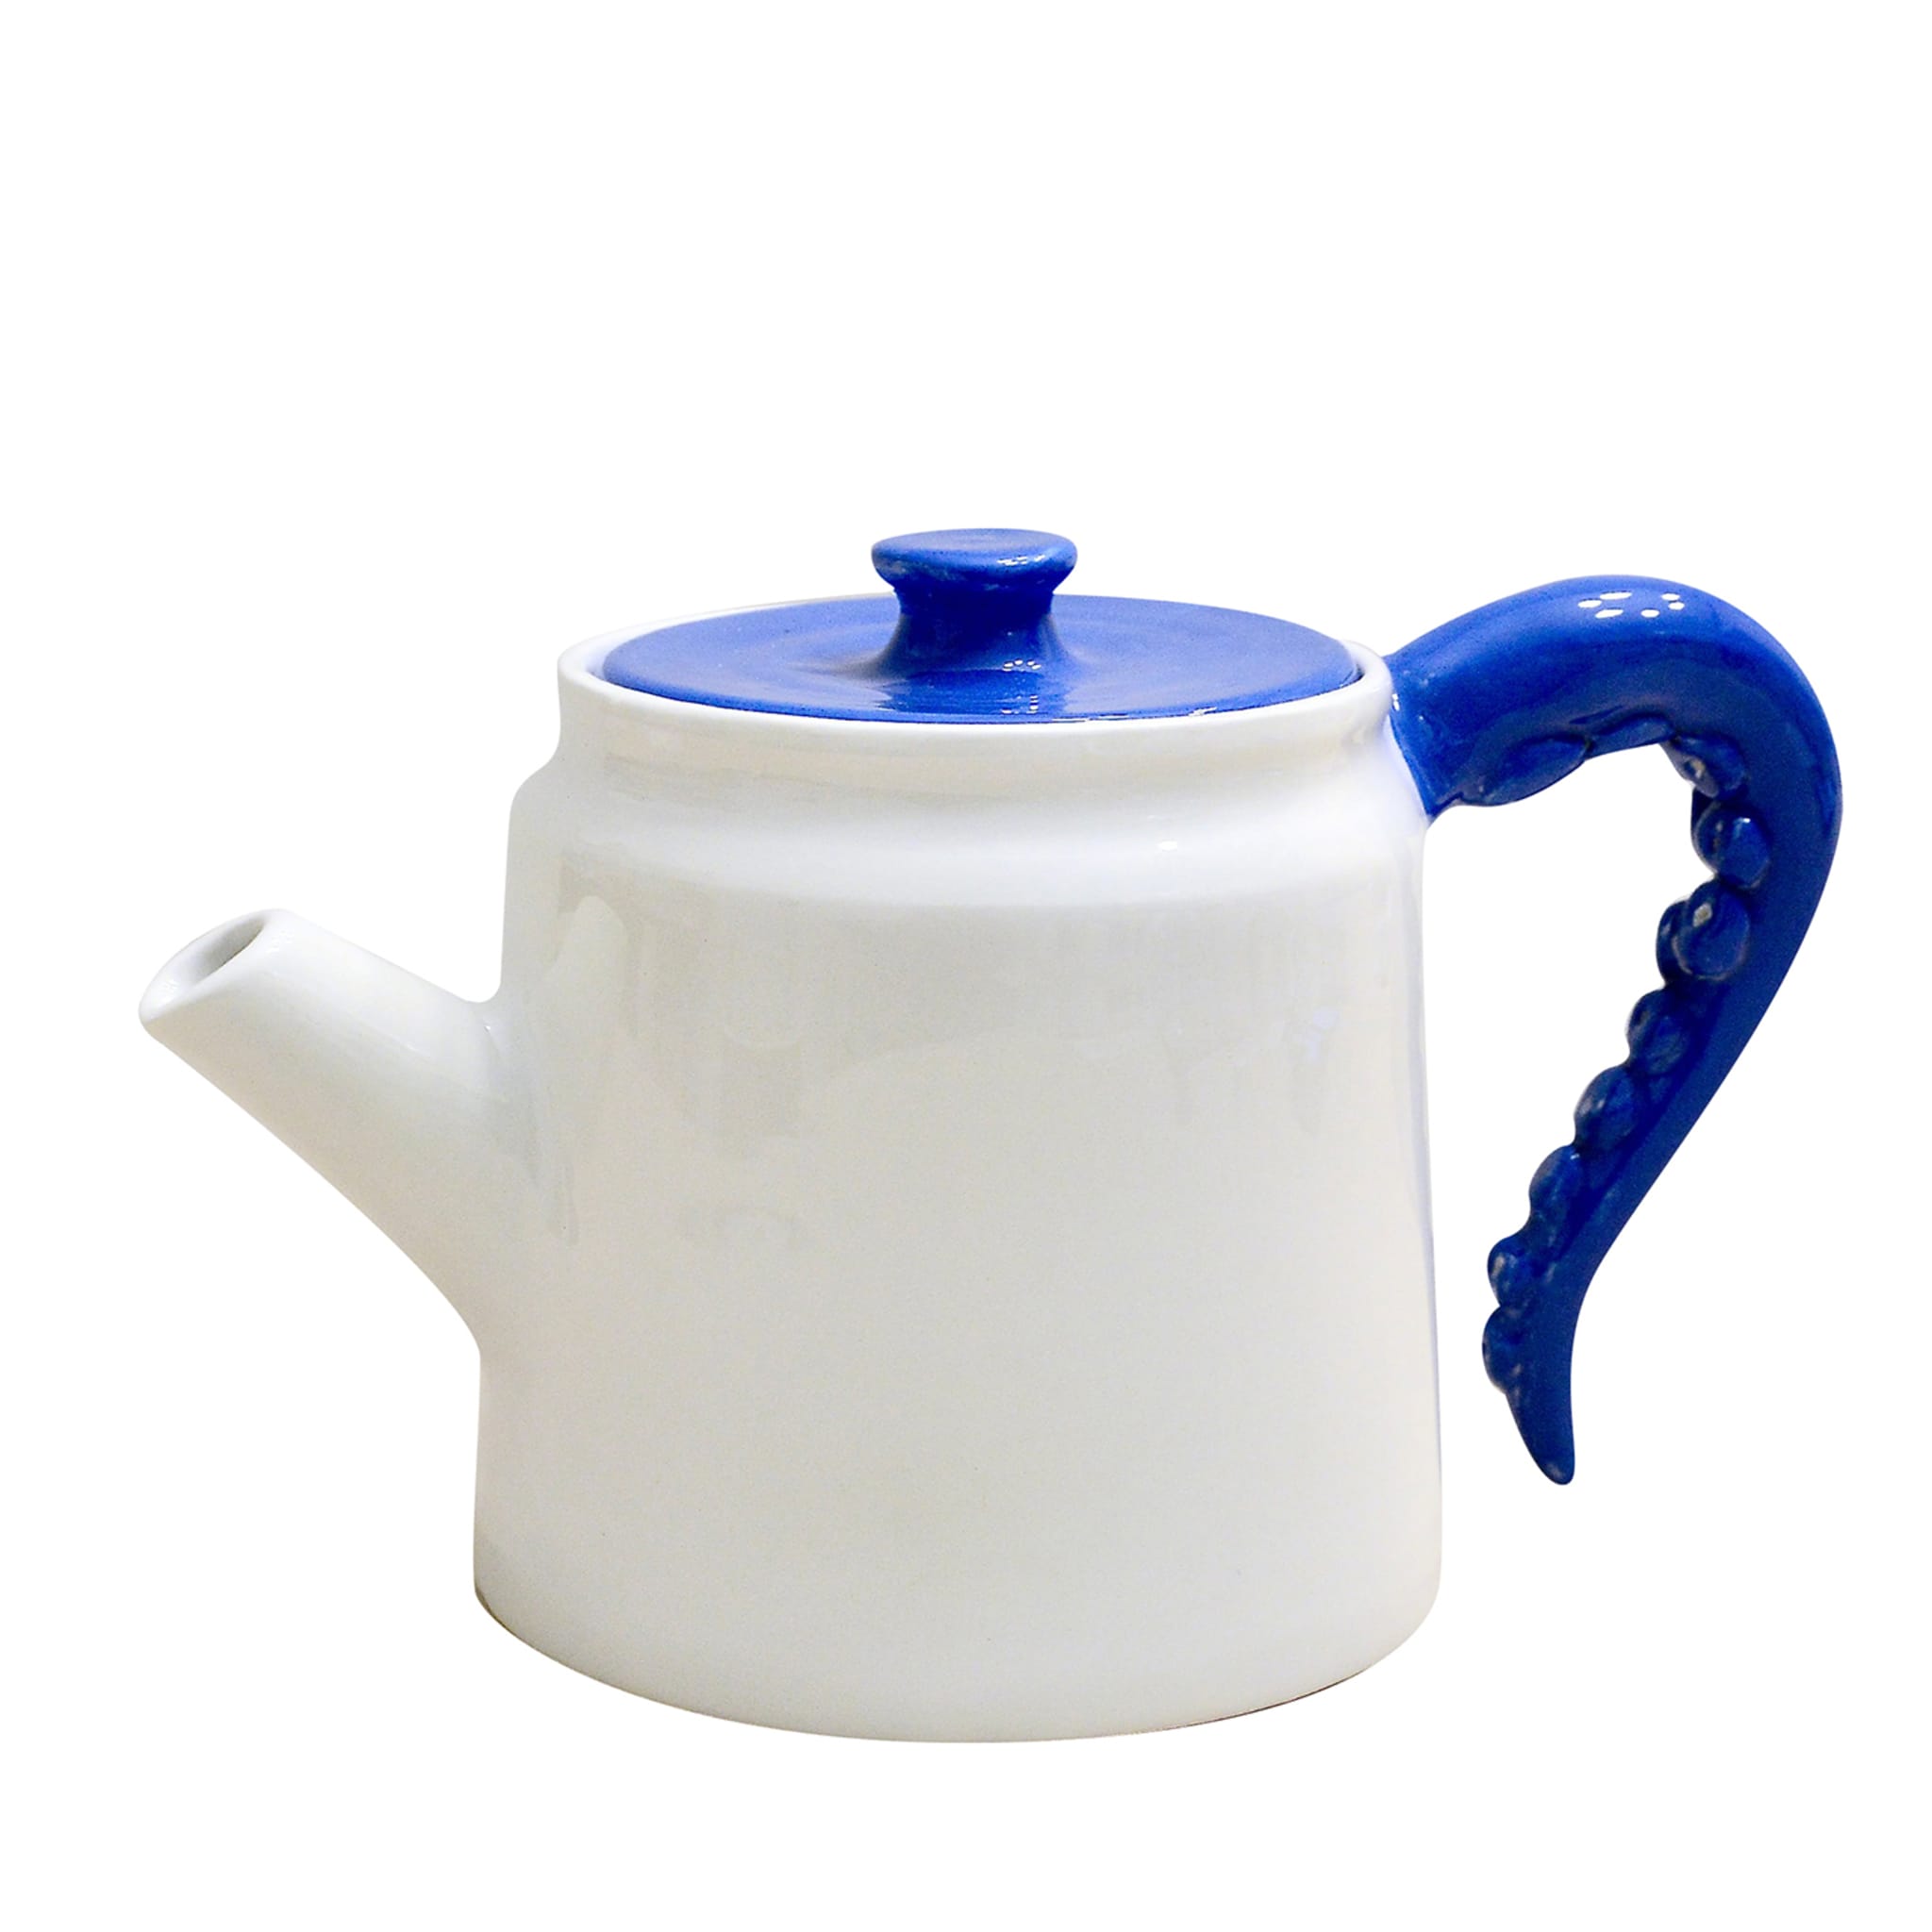 Polpo Blue&White Teapot - Main view